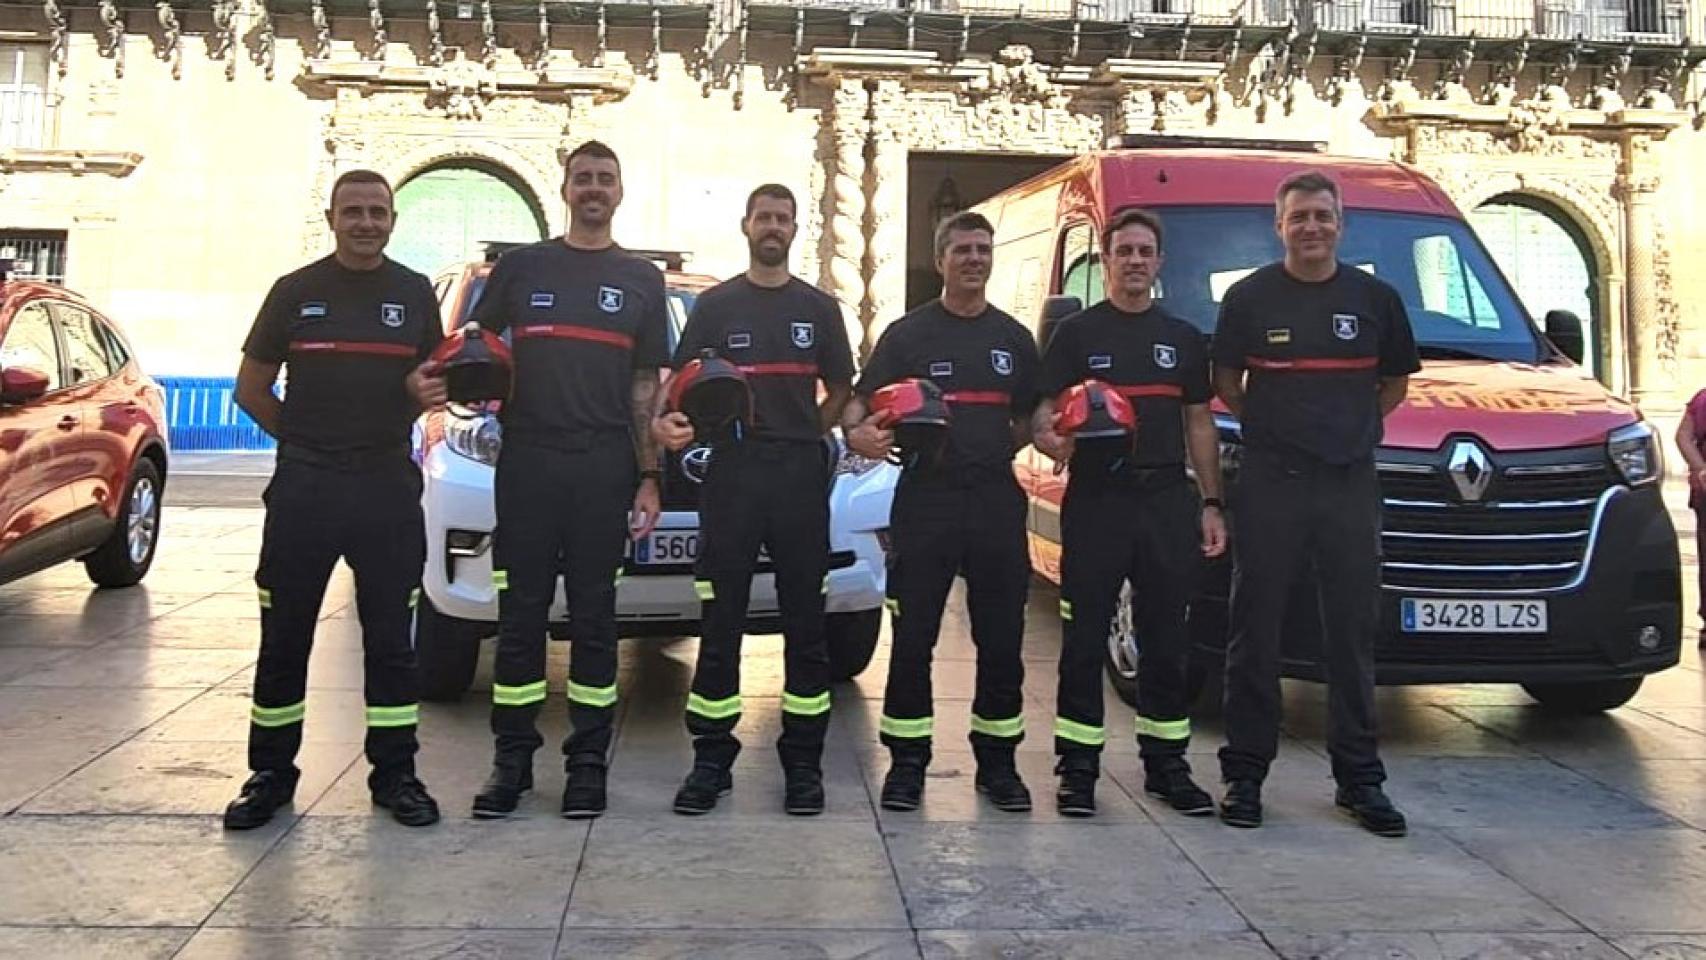 Los bomberos de Alicante.